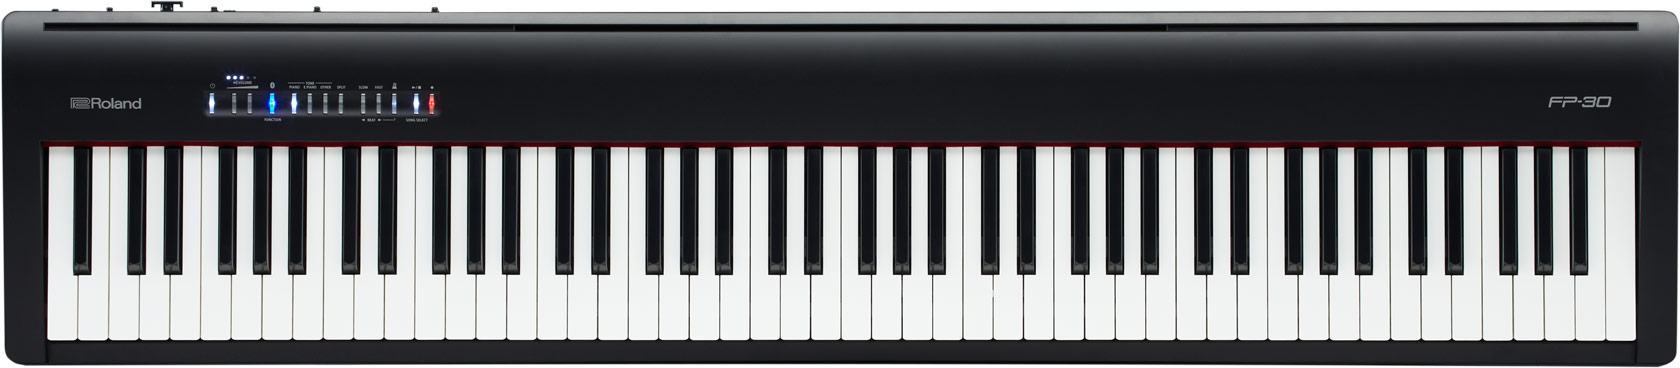 ROLAND FP-30X BK Digital Piano schwarz